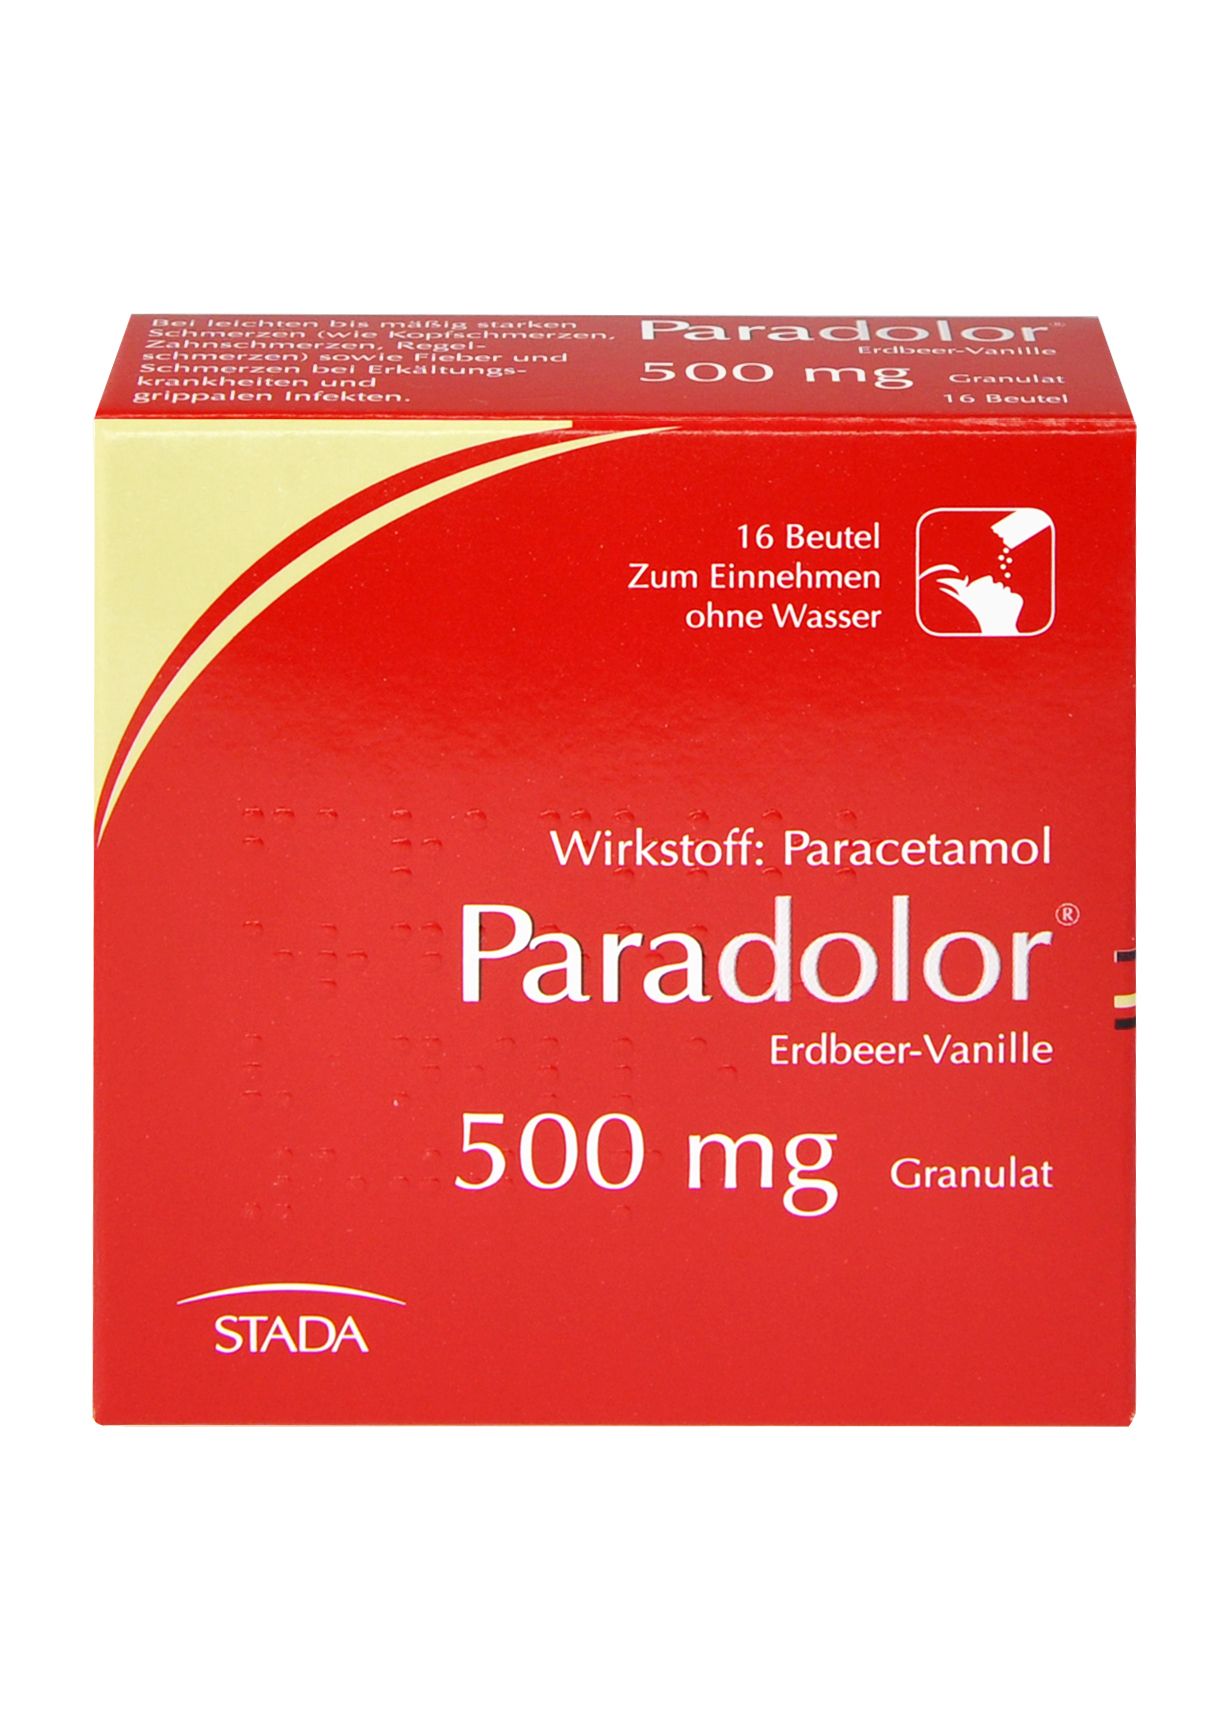 Abbildung Paradolor Erdbeer-Vanille 500 mg Granulat